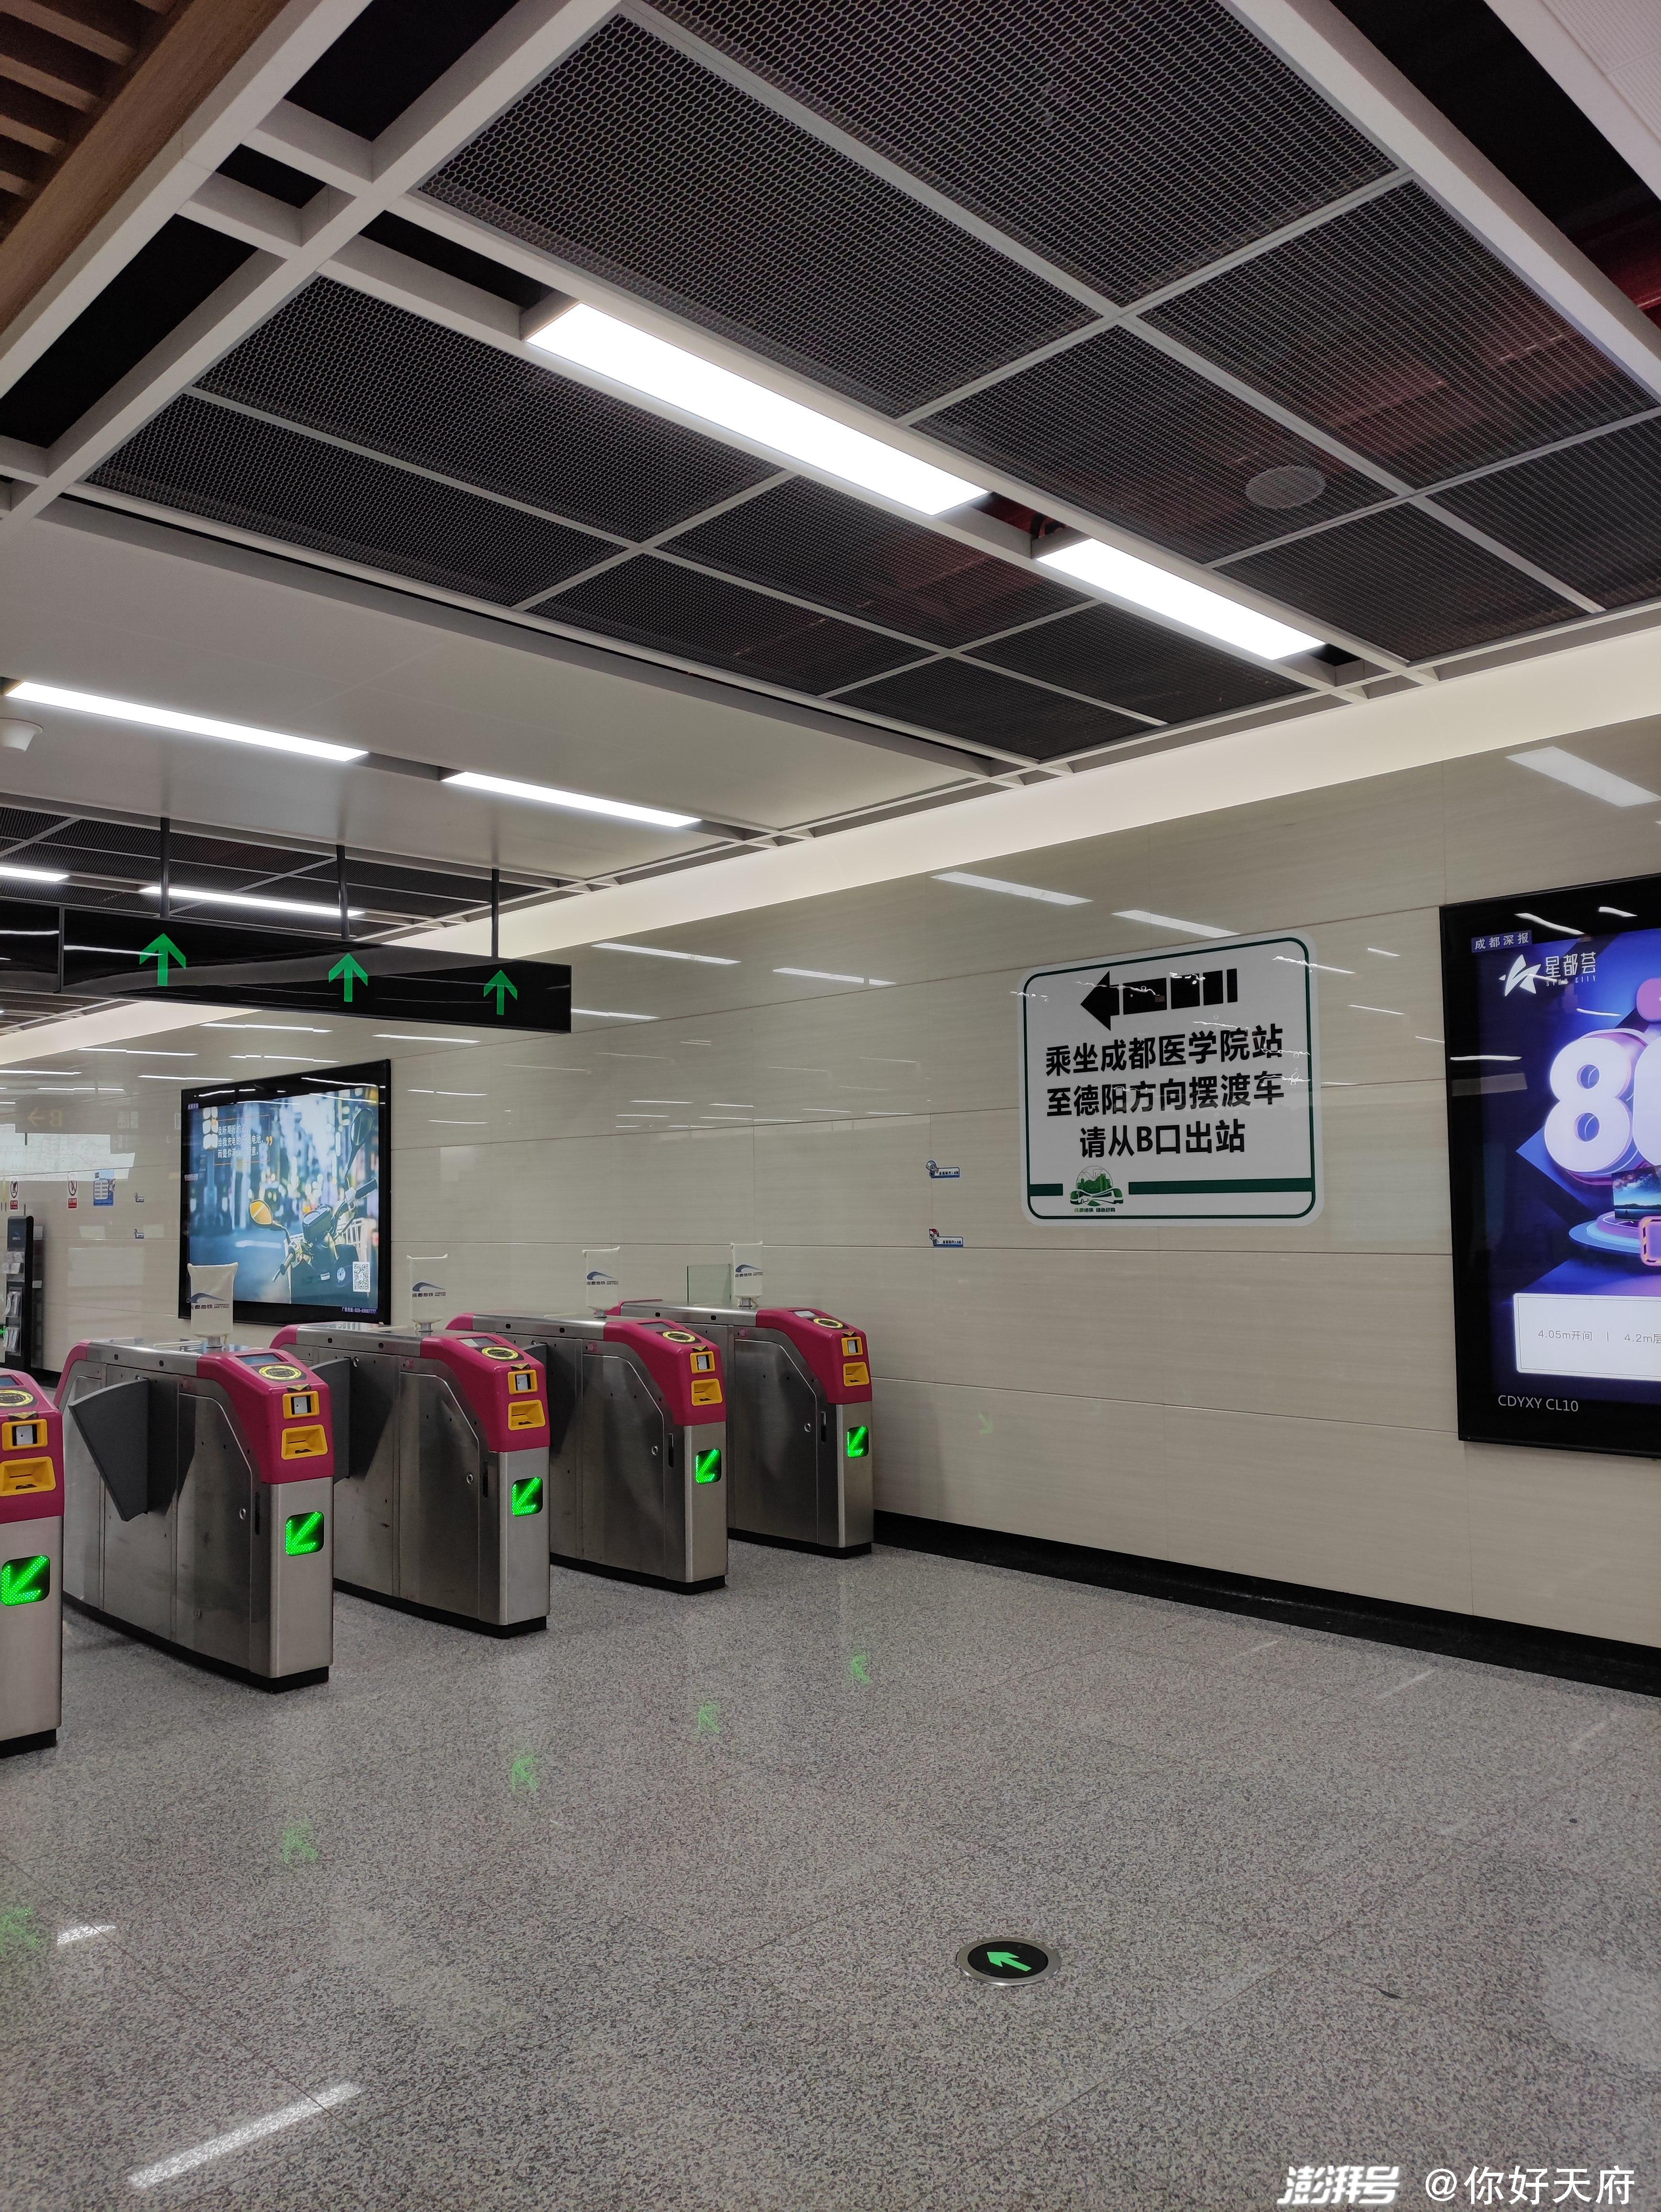 成都地铁站图片高清图片